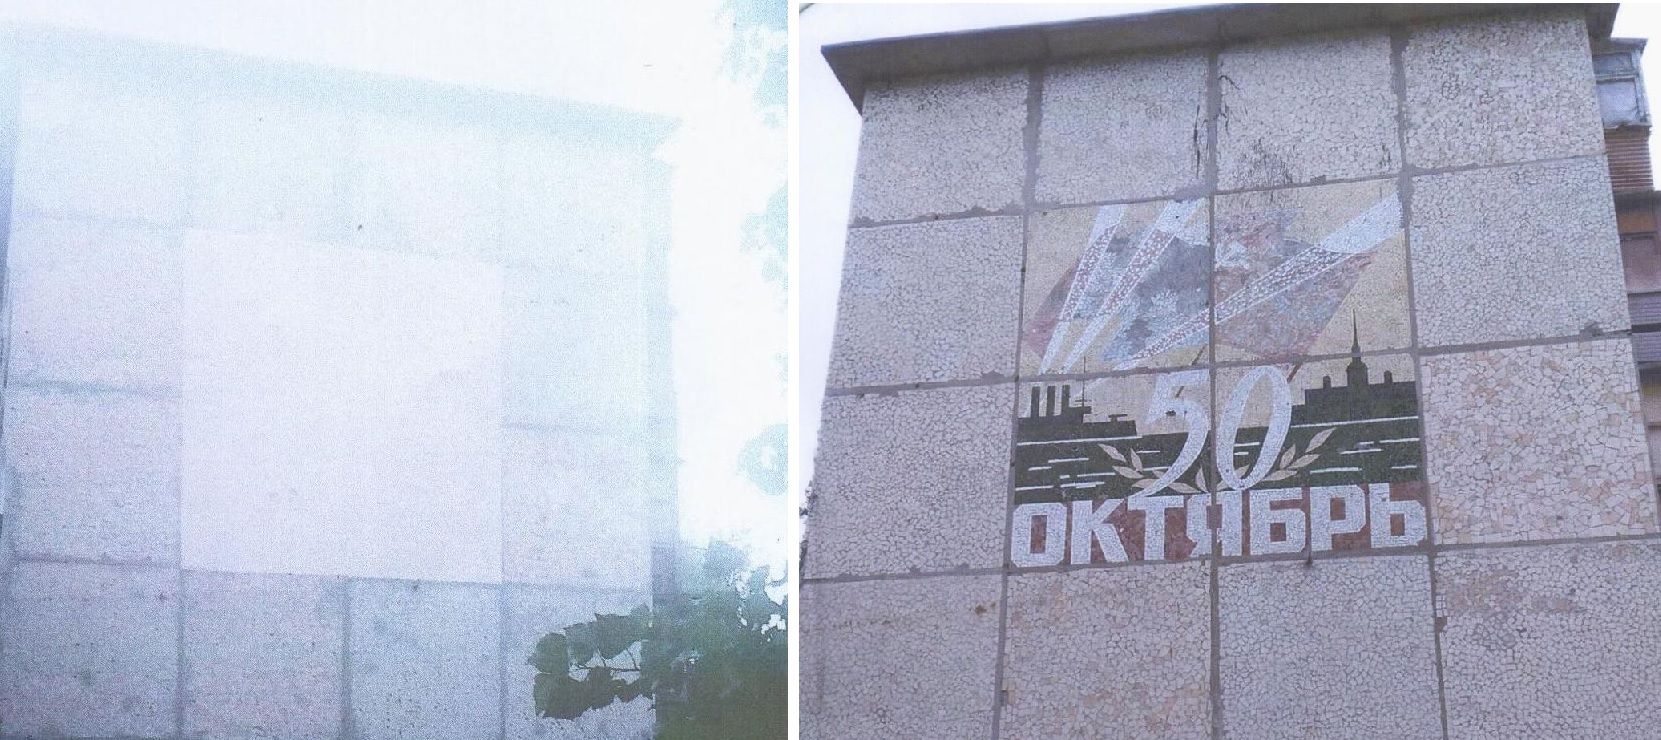 Декоммунизация в Донецкой области: в Авдеевке ликвидировали запрещенную символику